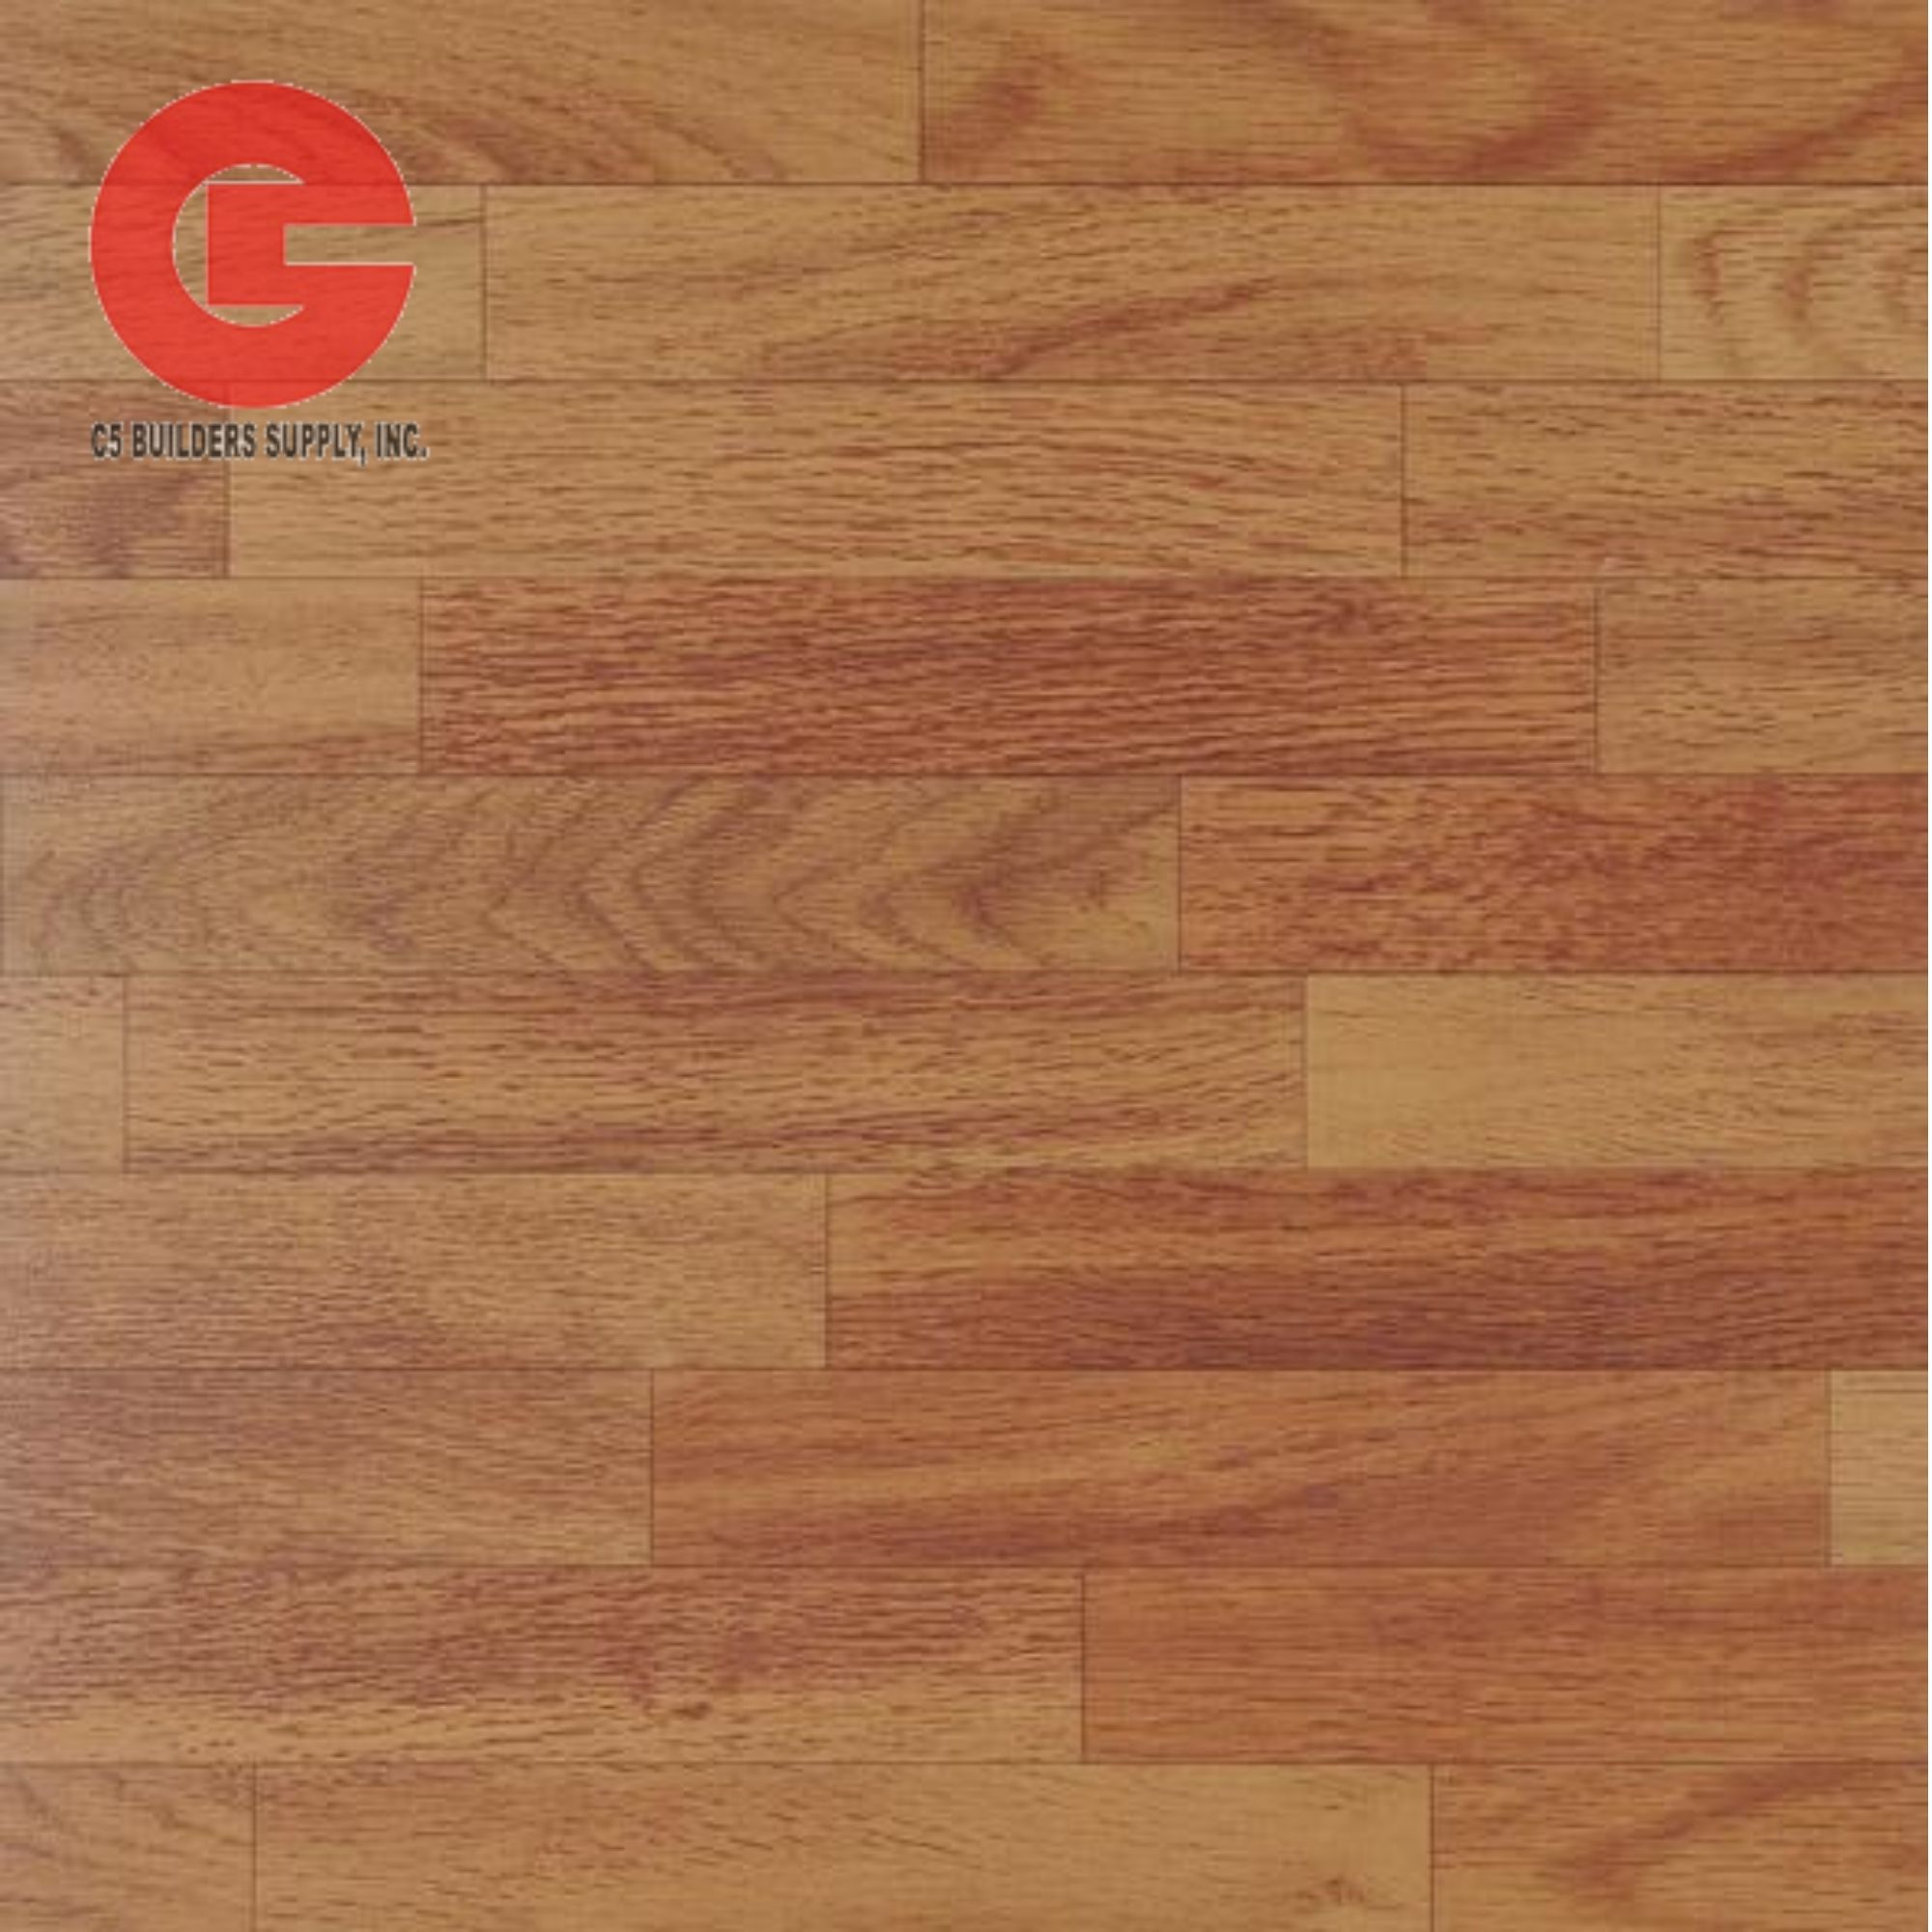 15pcs Kent Floors Pvc Vinyl Tiles 5745 30x30cm Lazada Ph